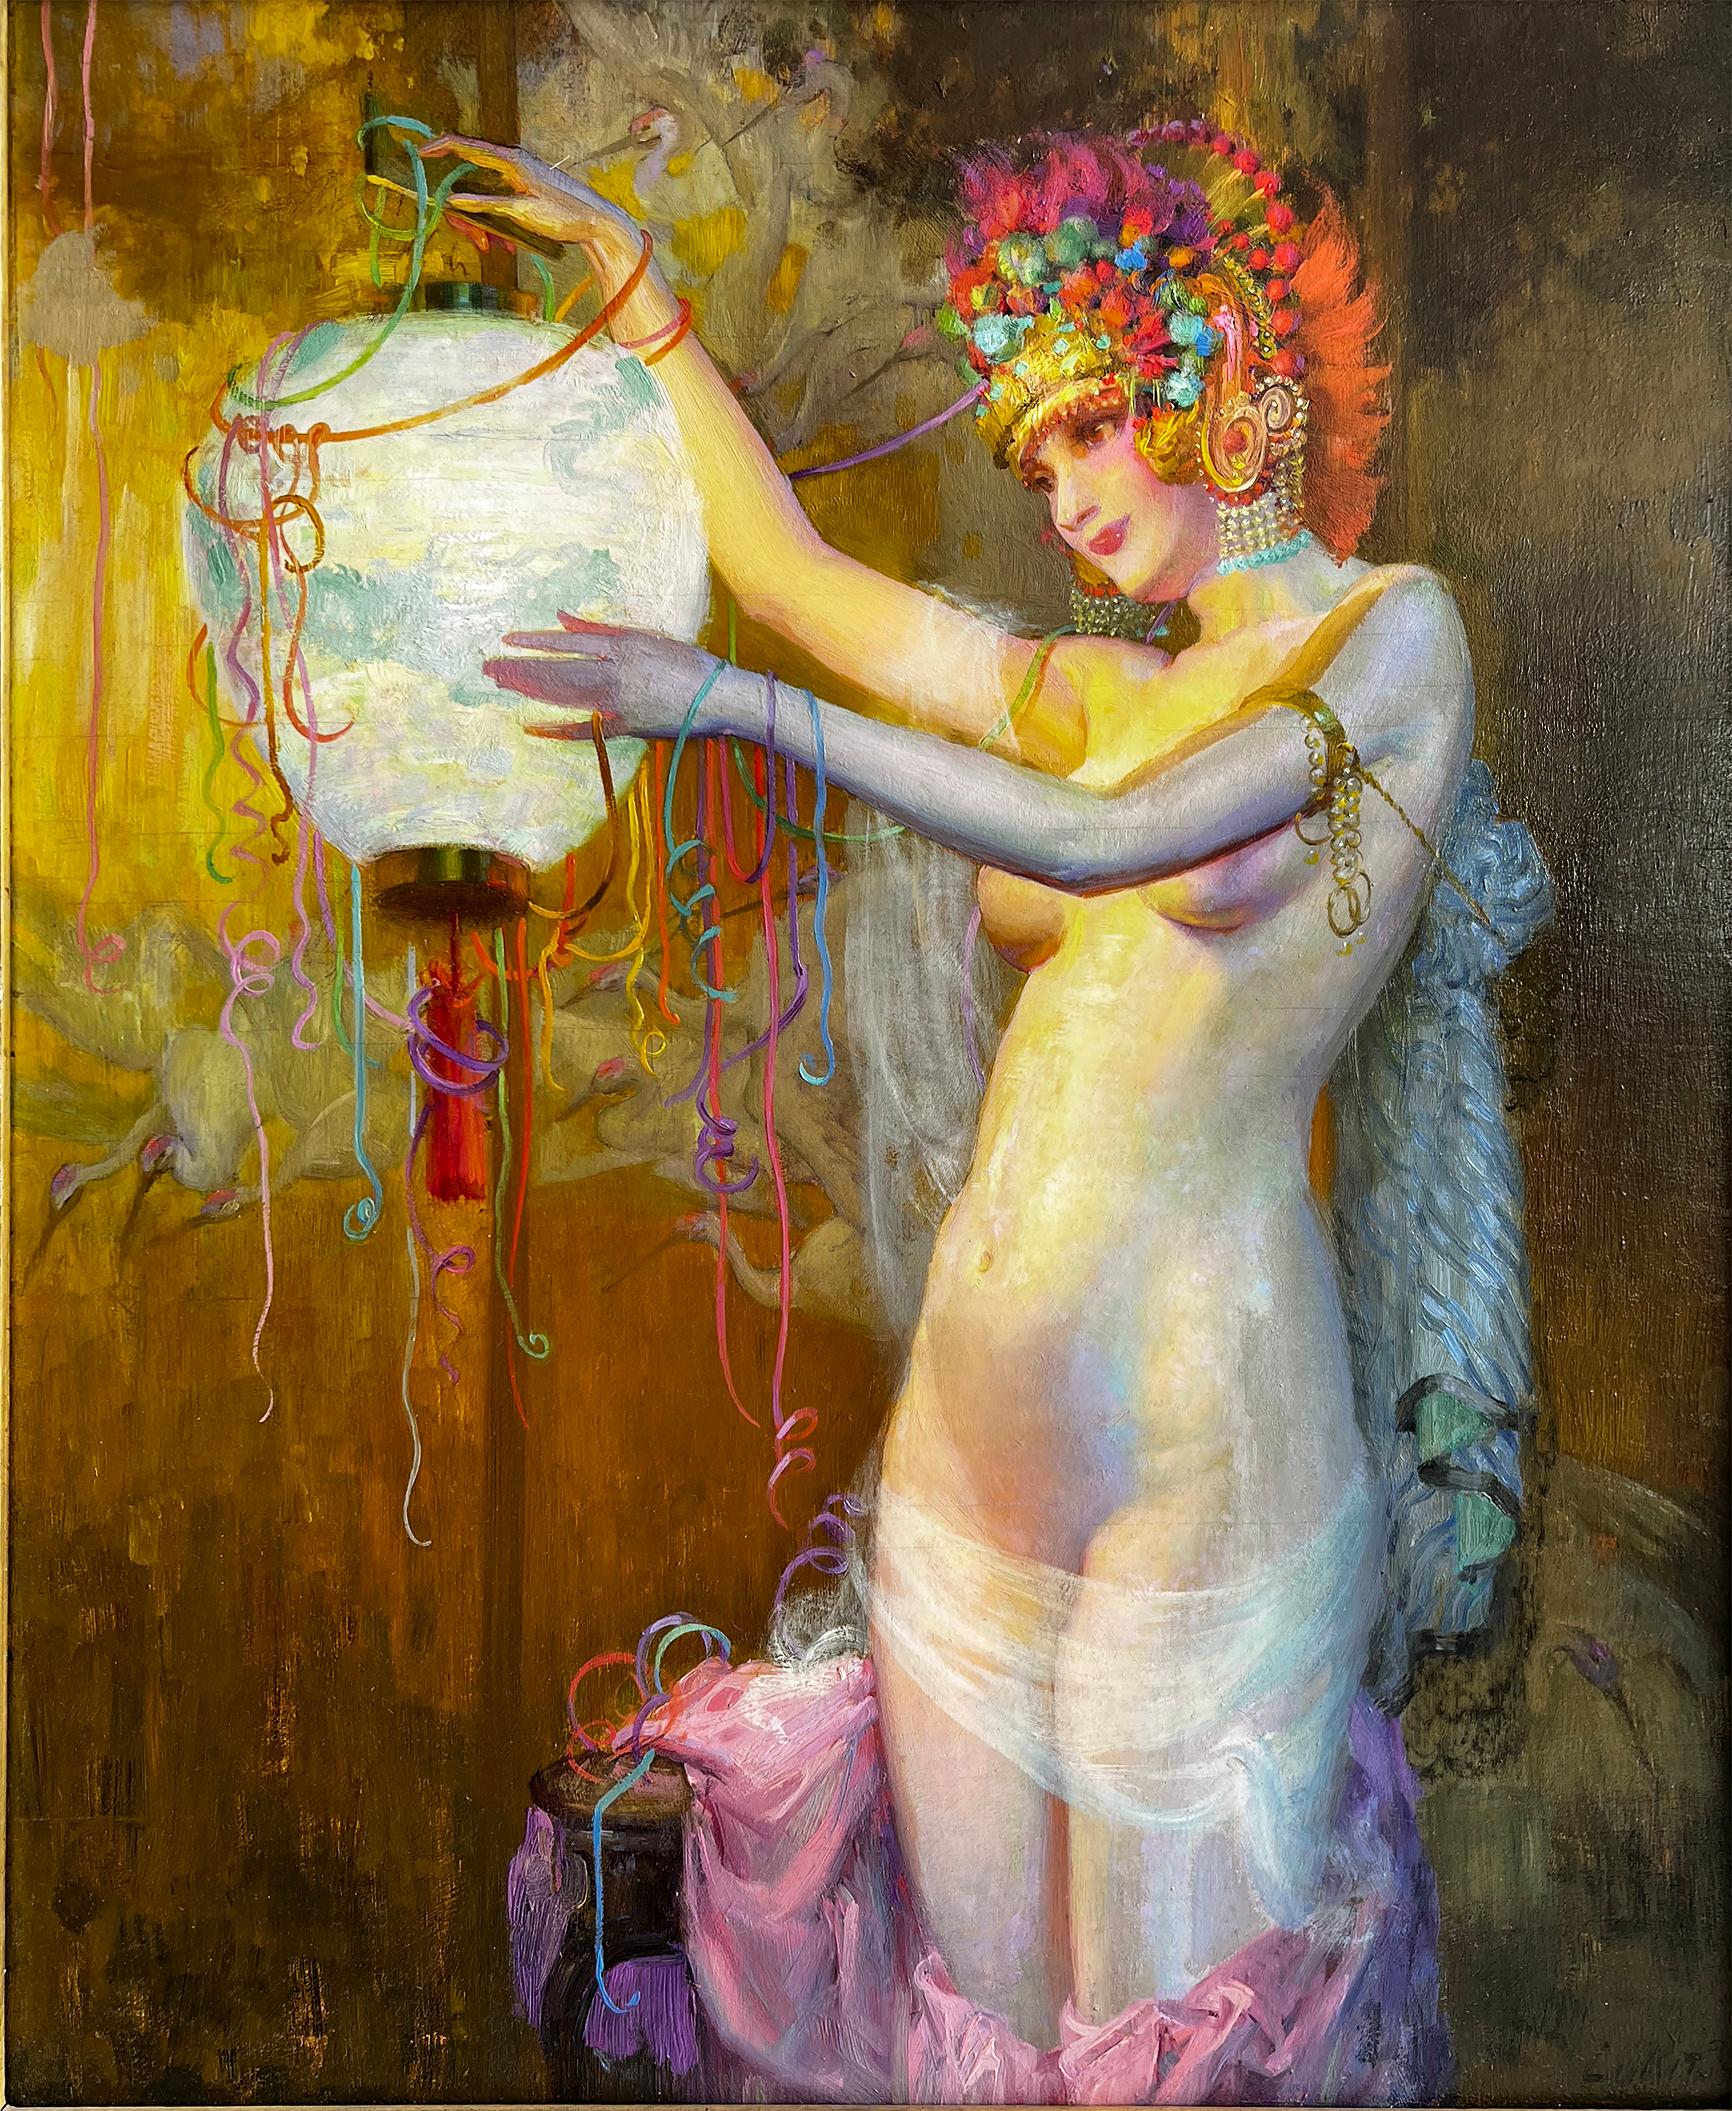 Nude Painting Theodore Lukits - Danseuse nue ornée de fleurs  Coiffeuse et lanterne japonaise  - Carnaval 